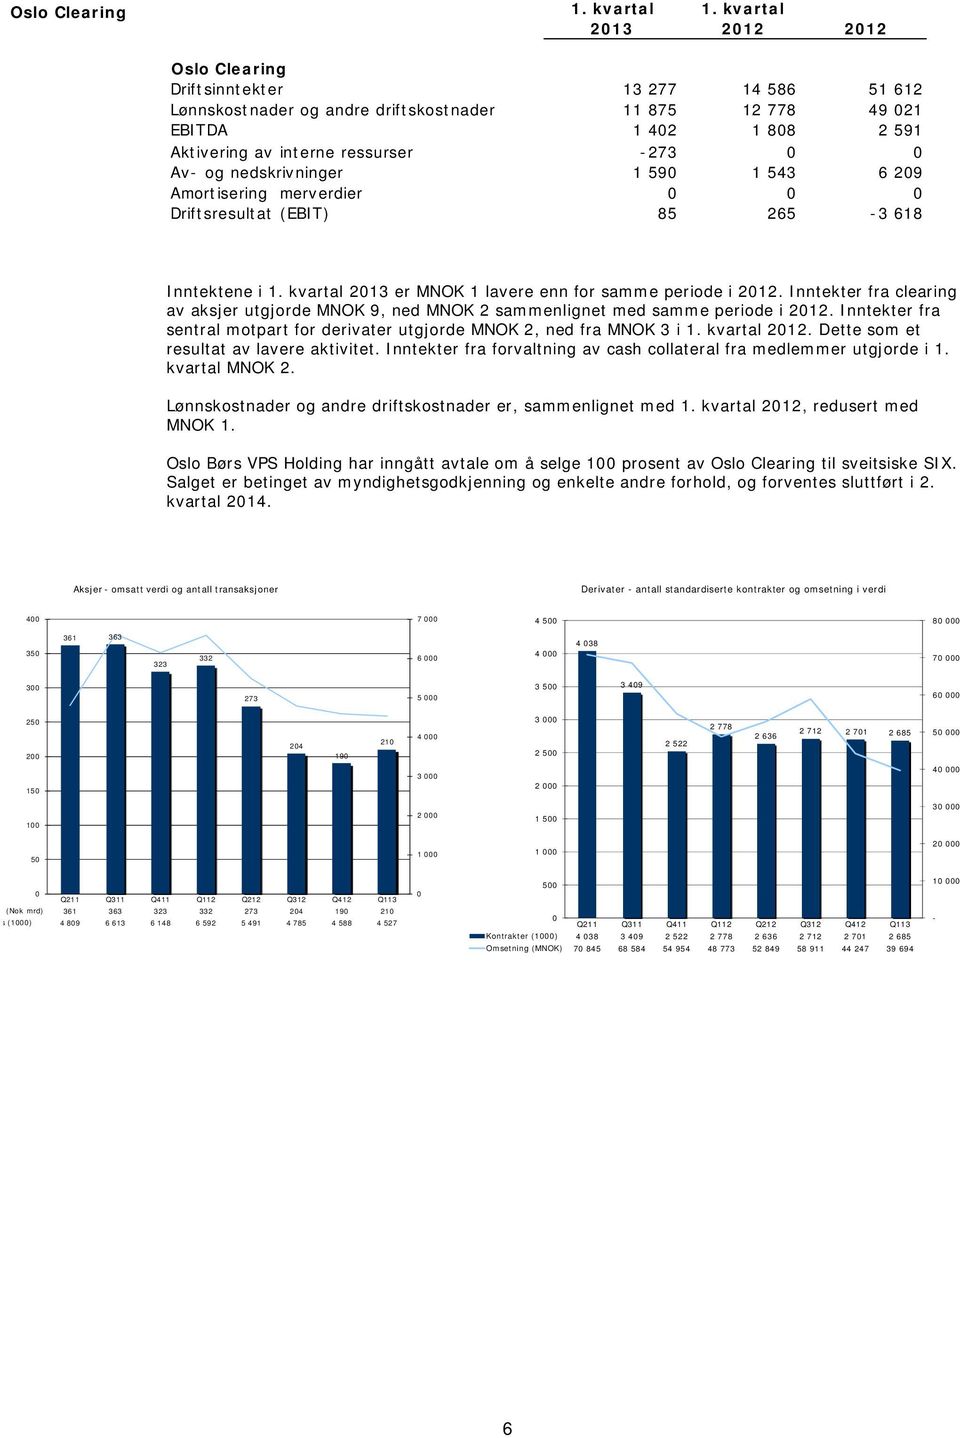 nedskrivninger 1 590 1 543 6 209 Amortisering merverdier 0 0 0 Driftsresultat (EBIT) 85 265-3 618 Inntektene i 1. kvartal 2013 er MNOK 1 lavere enn for samme periode i 2012.